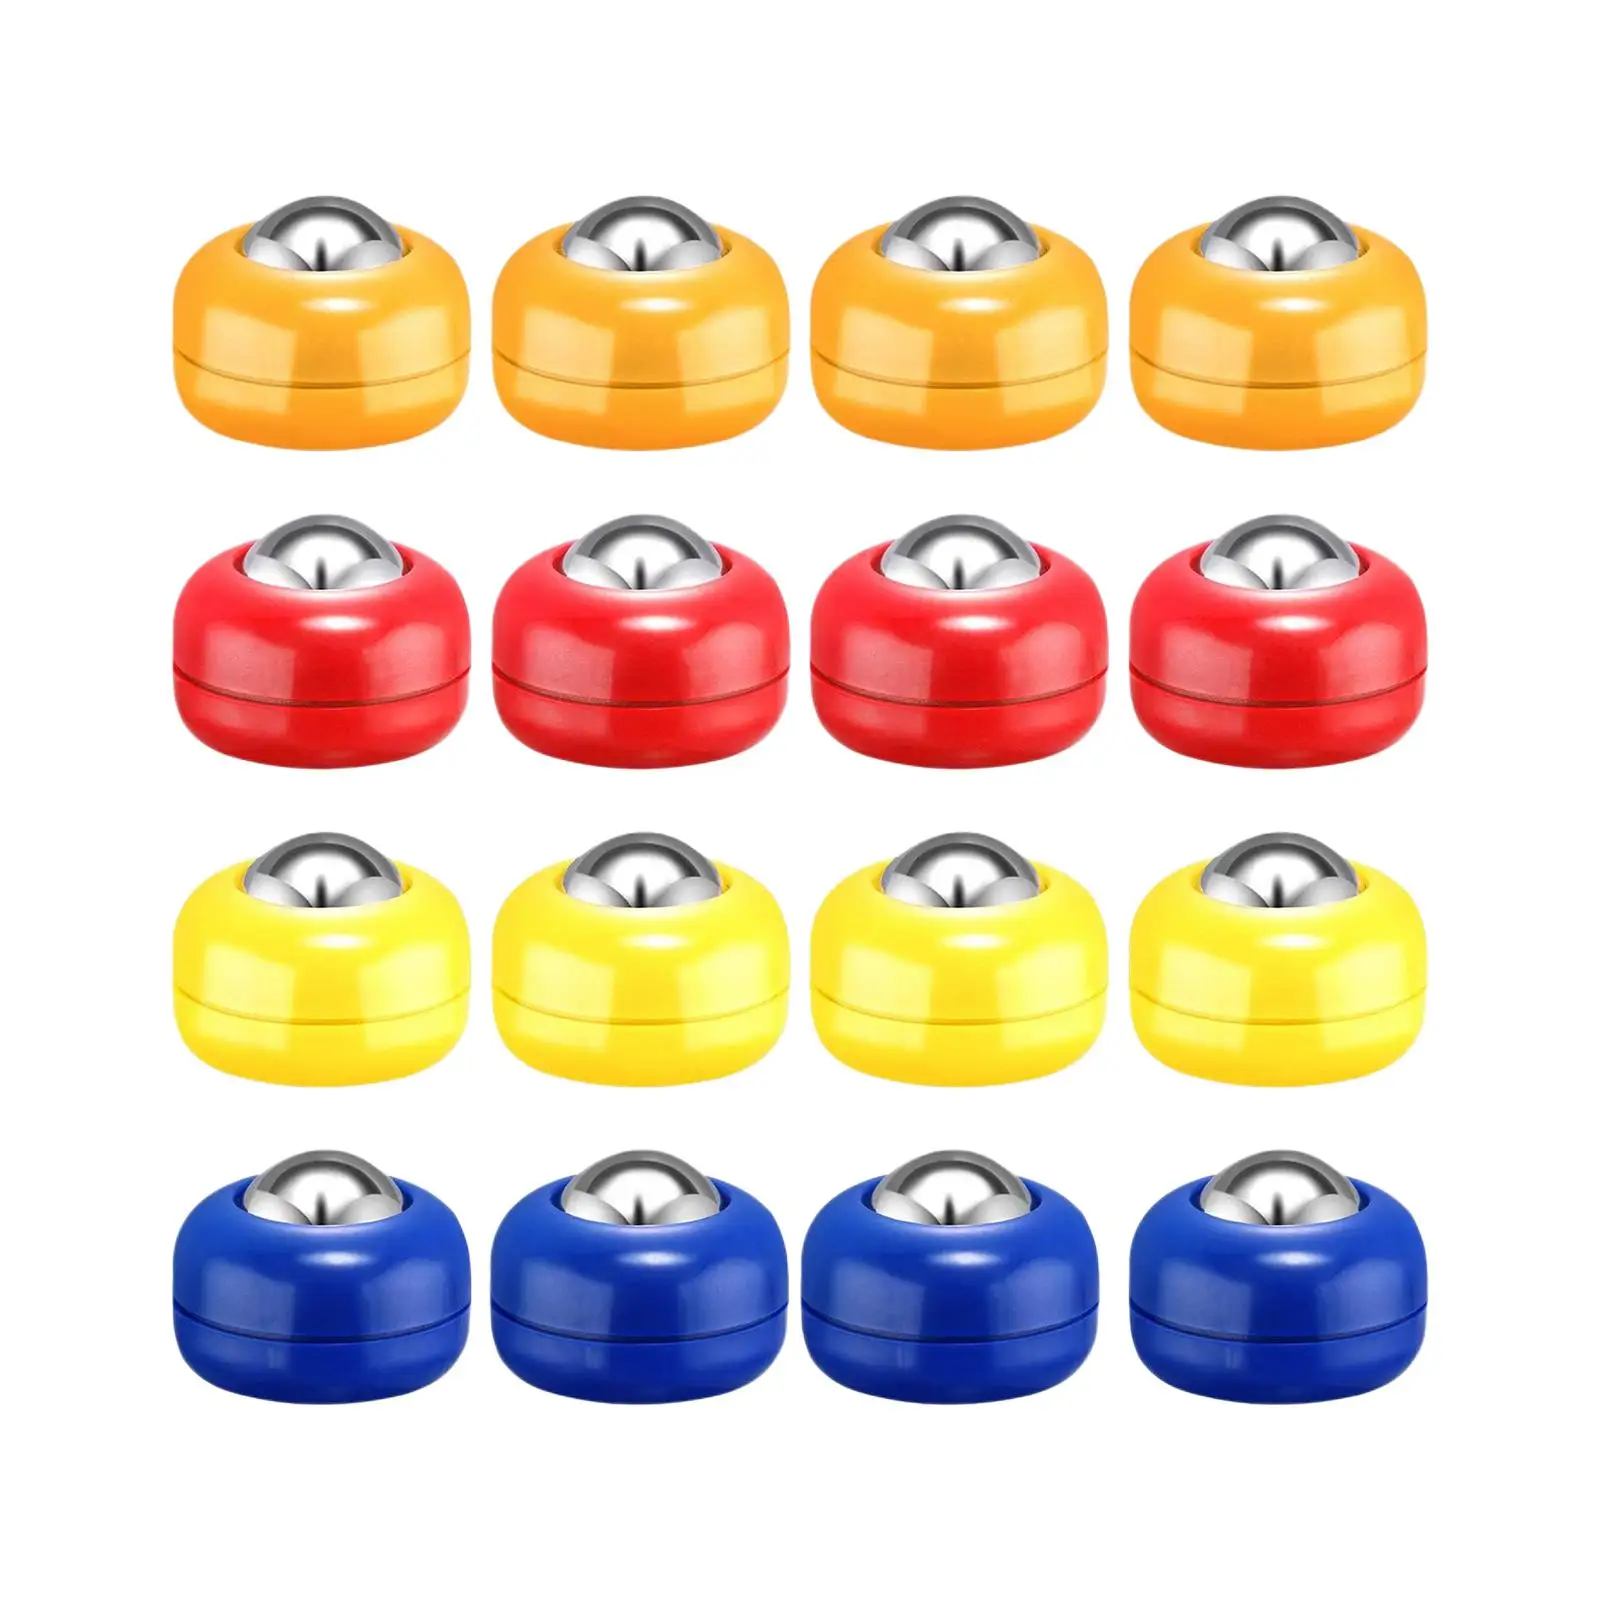 16Pcs Shuffleboard Pucks Shuffleboard Curling Accessories 4 Colors Diameter 25mm Replacement Shuffleboard Rollers Set for Games